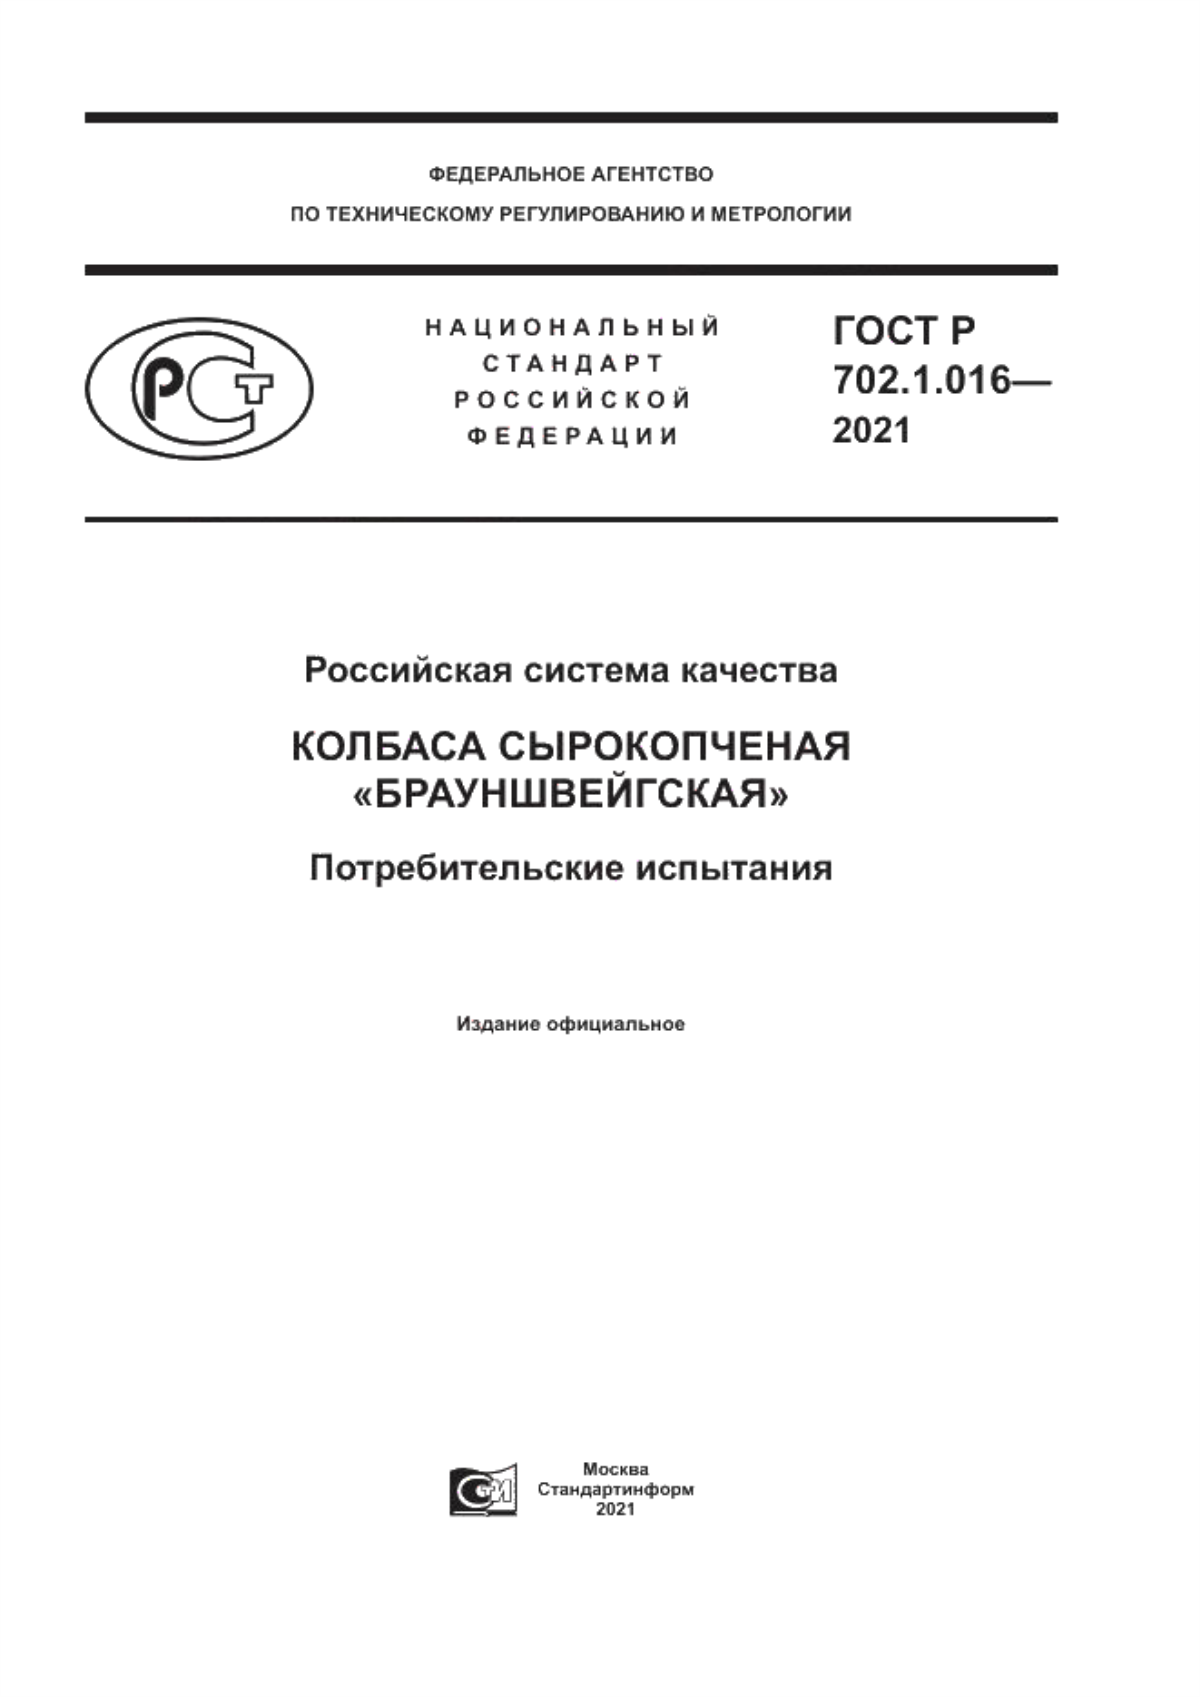 ГОСТ Р 702.1.016-2021 Российская система качества. Колбаса сырокопченая «Брауншвейгская». Потребительские испытания